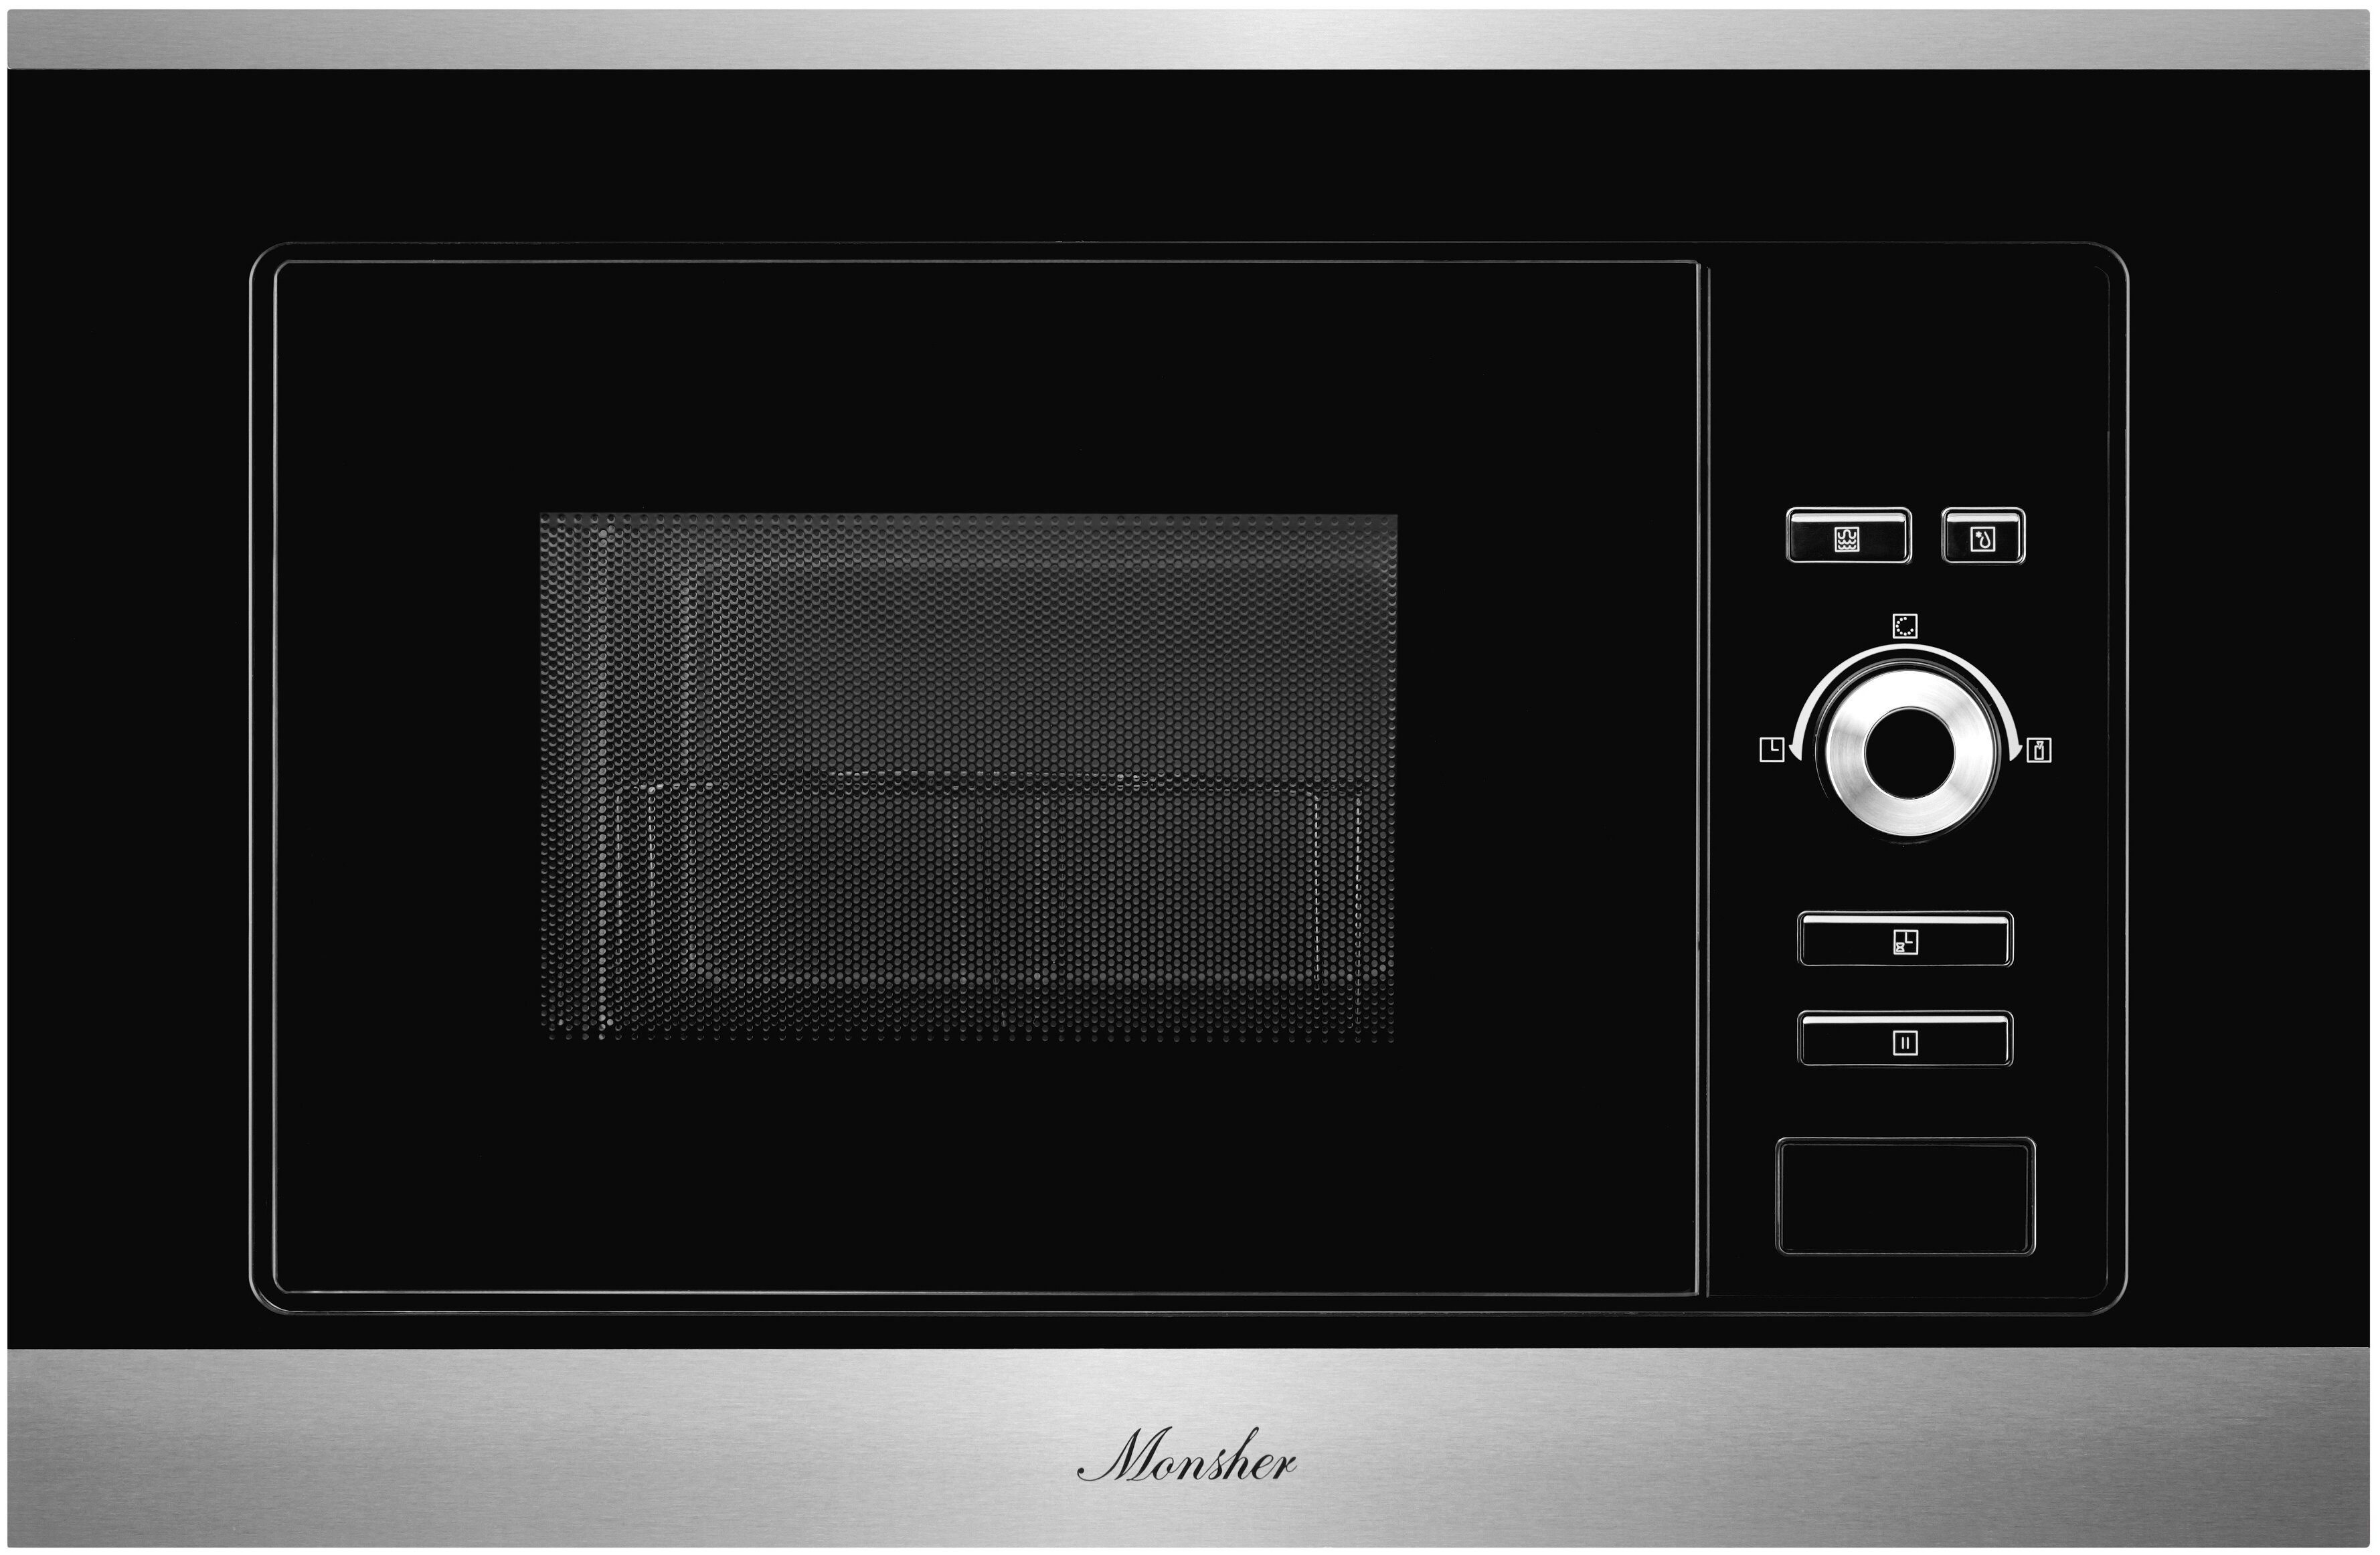 Микроволновая печь встраиваемая Monsher MMH 201 BX 20 л, 1.25 кВт, гриль, черный/серебристый (MMH 201 BX)